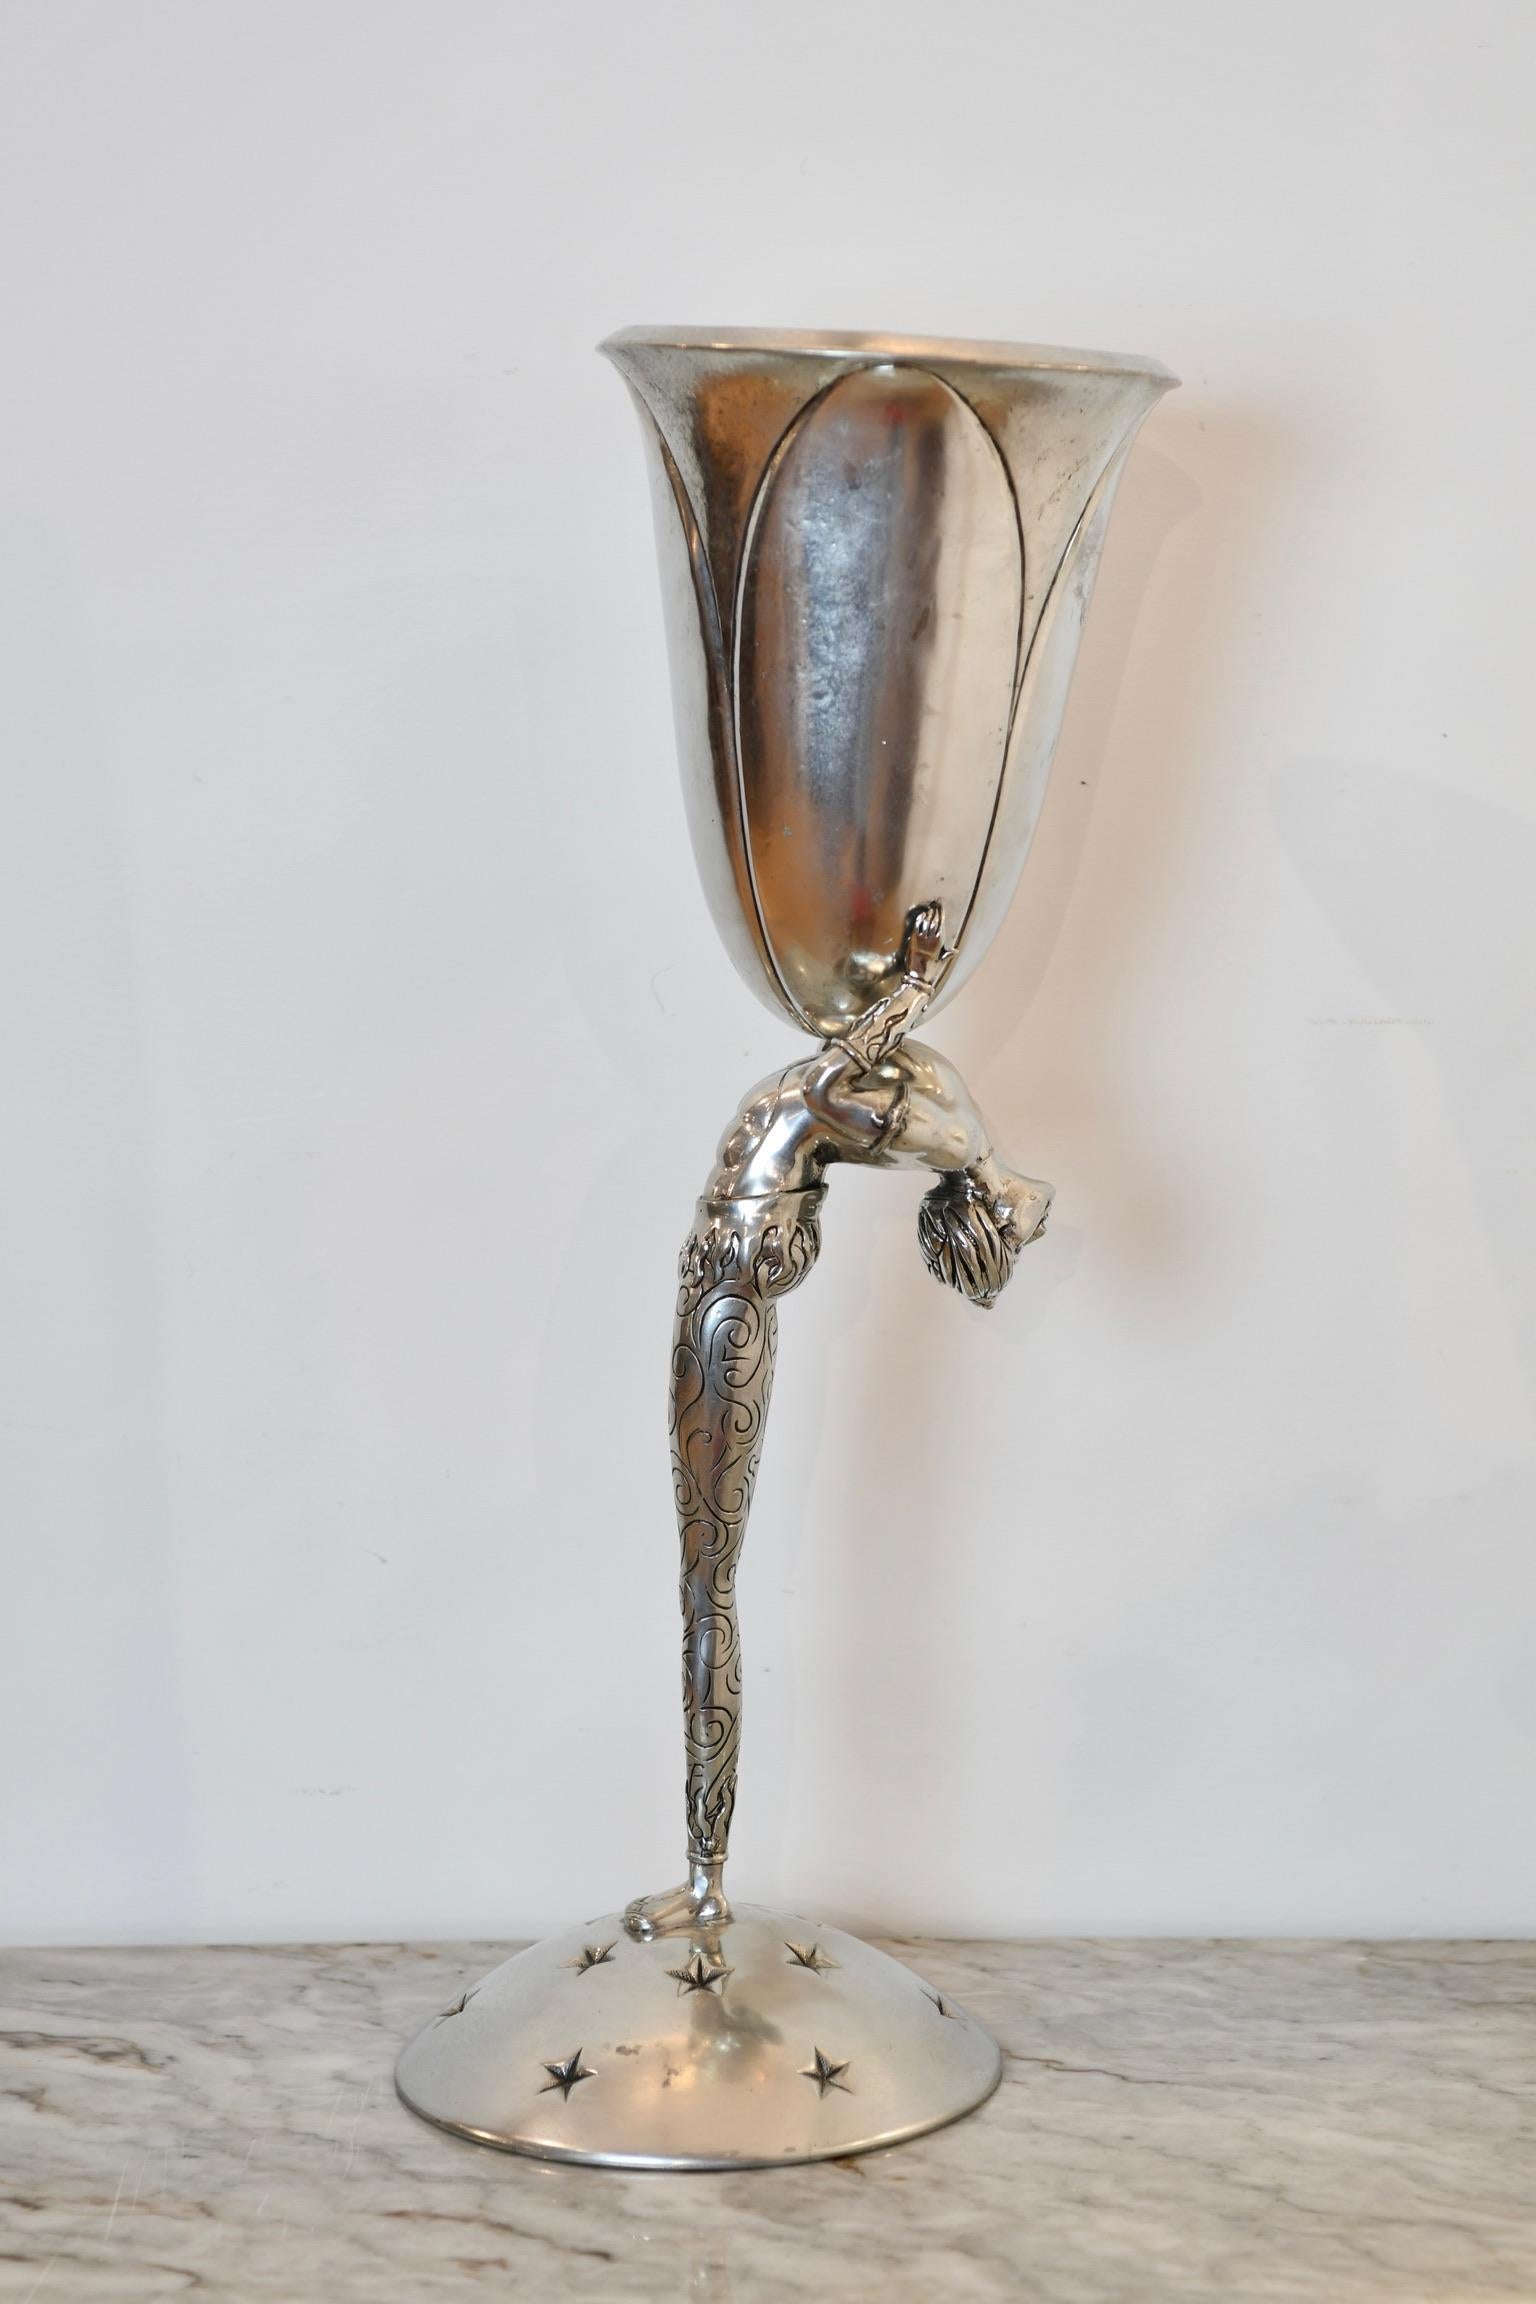 Zinnvase mit Akrobat gewölbten Rücken hält Mittelstück Vase und auf Stern akzentuiert gewölbt Basis. Gezeichnet auf Basis Piero Figura für Atena, Mailand. Abmessungen: 24.5 